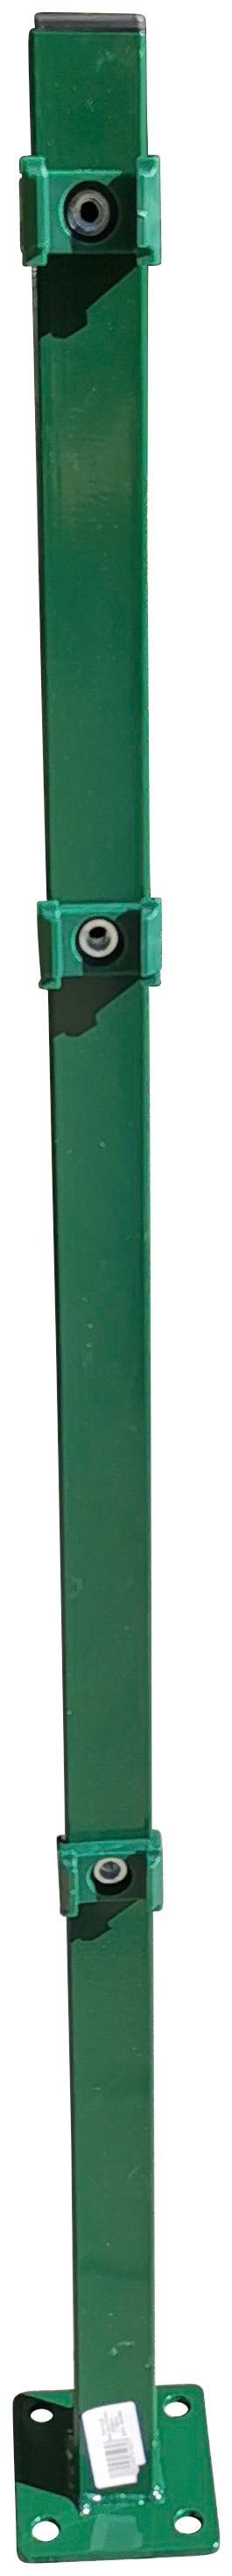 Peddy Shield Zaunpfosten, 90 cm Höhe, für Ein- und Doppelstabmatten